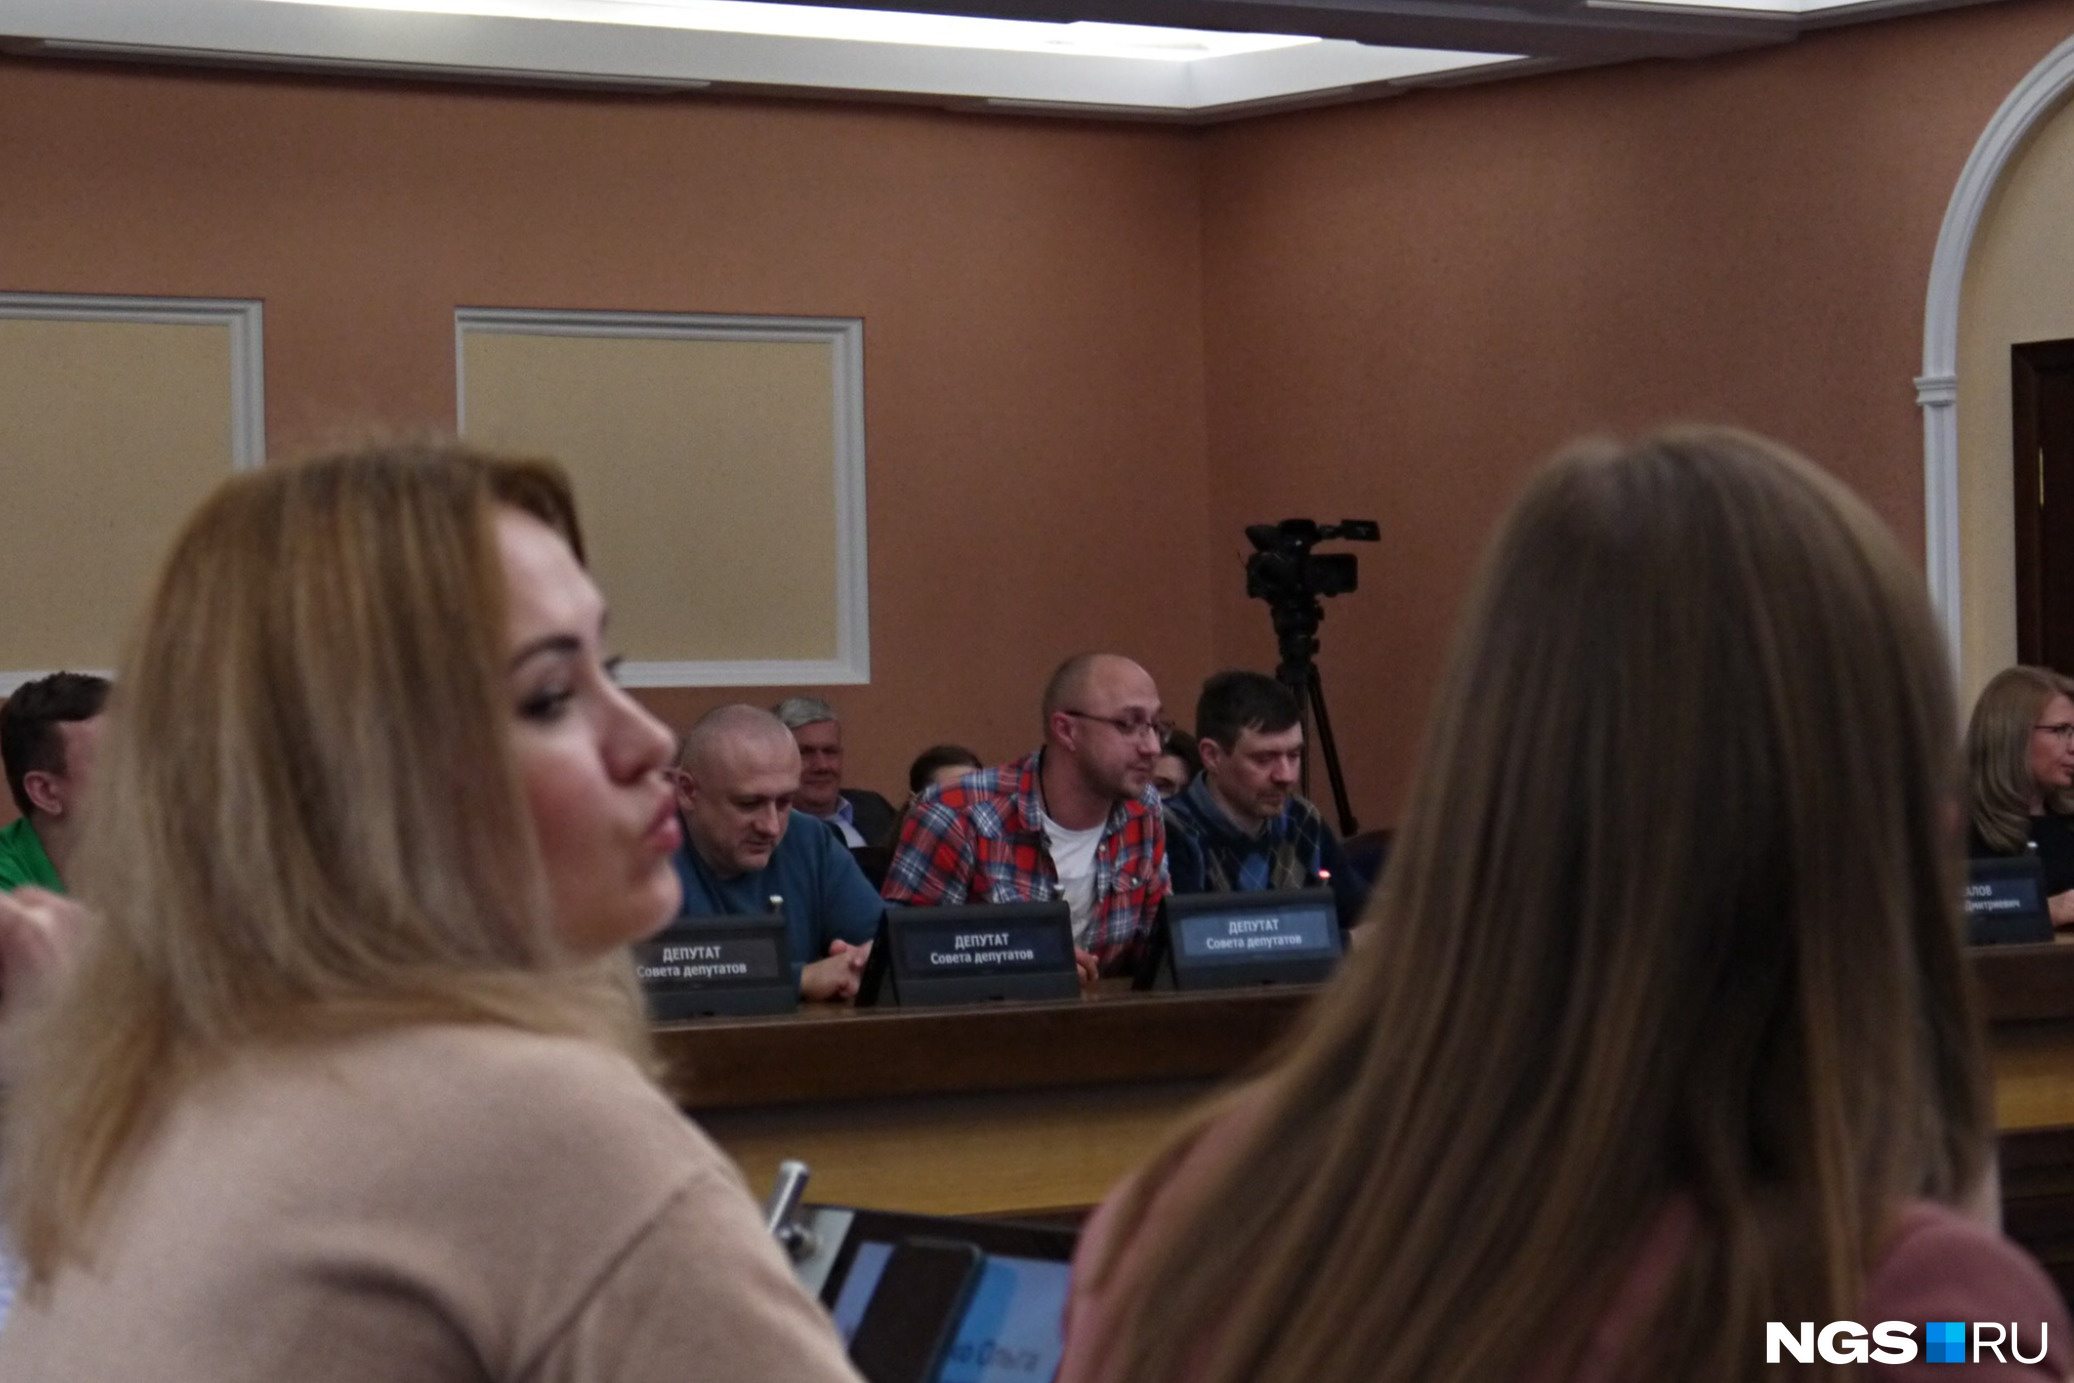 Общественник Алексей Носов (в центре) смог зажечь аудиторию